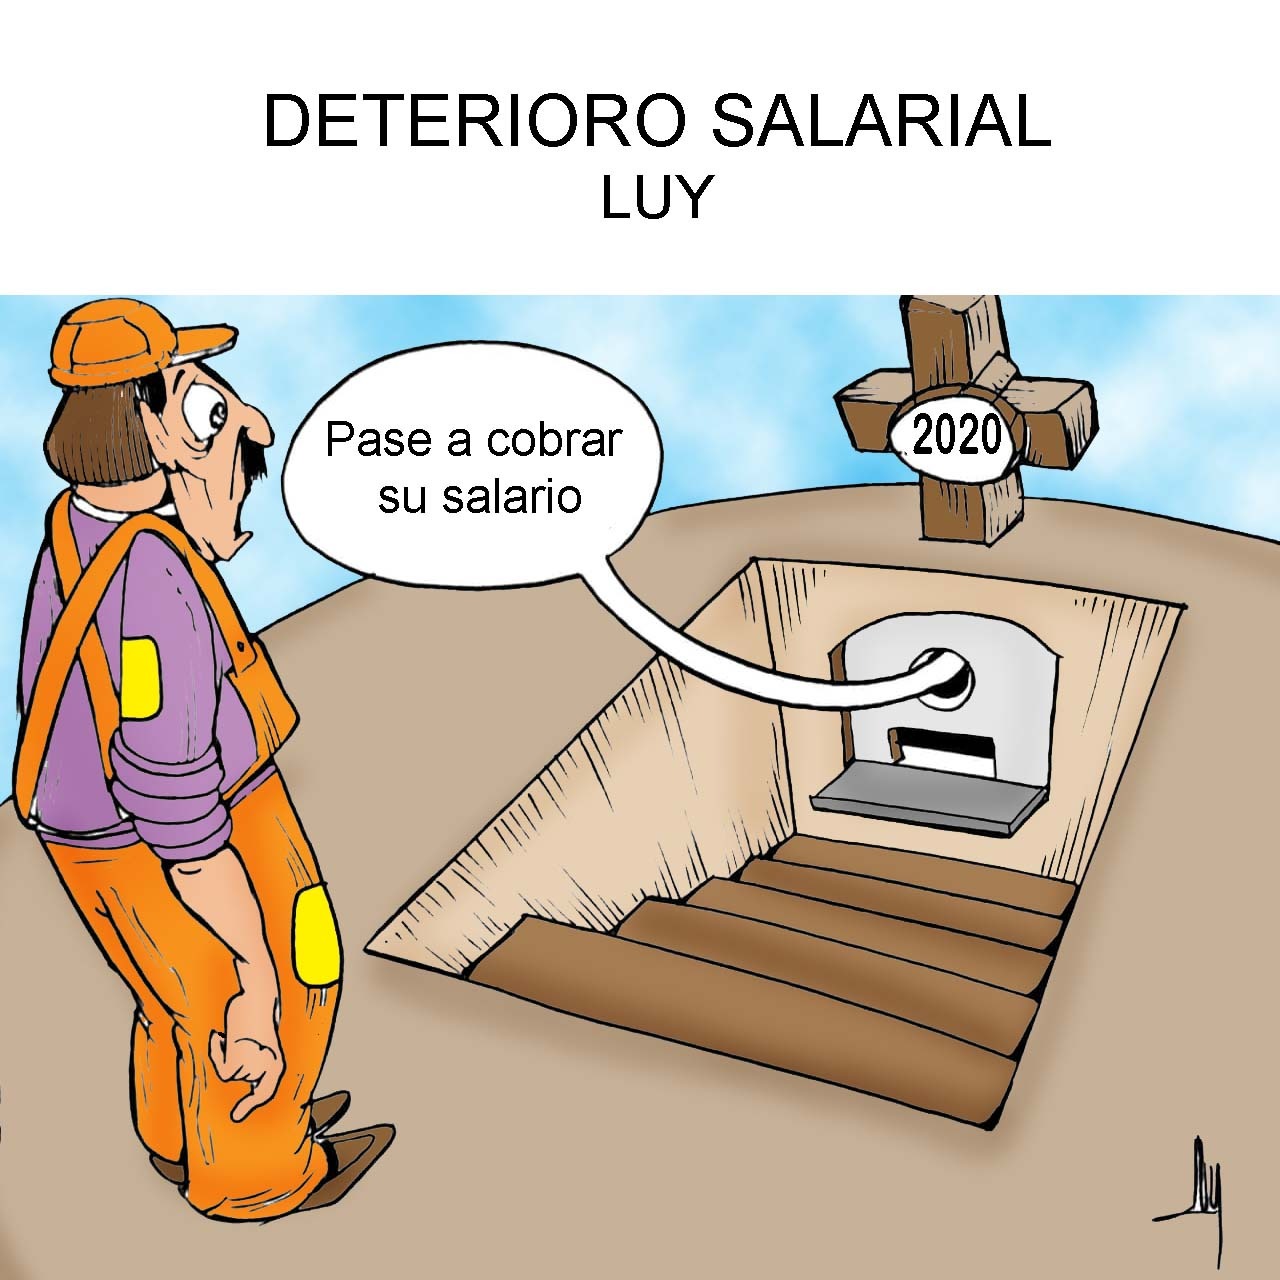 Deterioro salarial - Luy